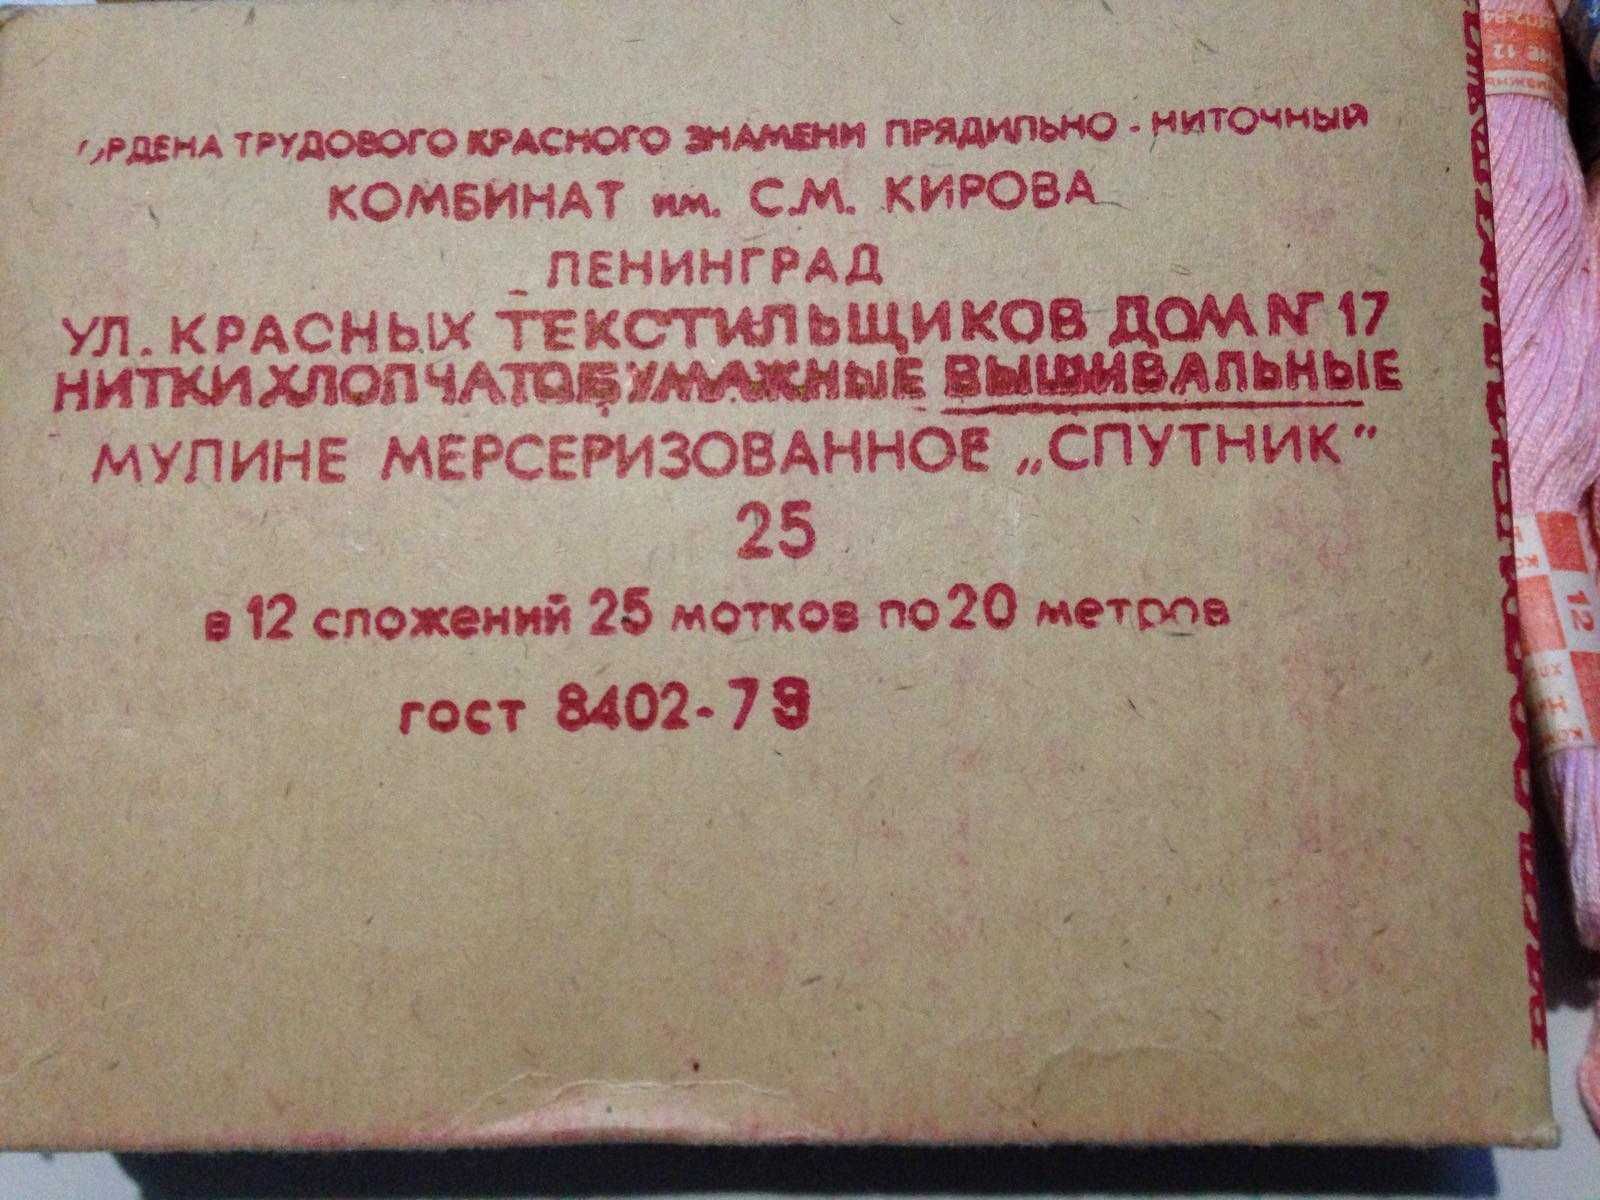 ленинградское мулине,нитки для вышивания,1979,муліне СССР, нові